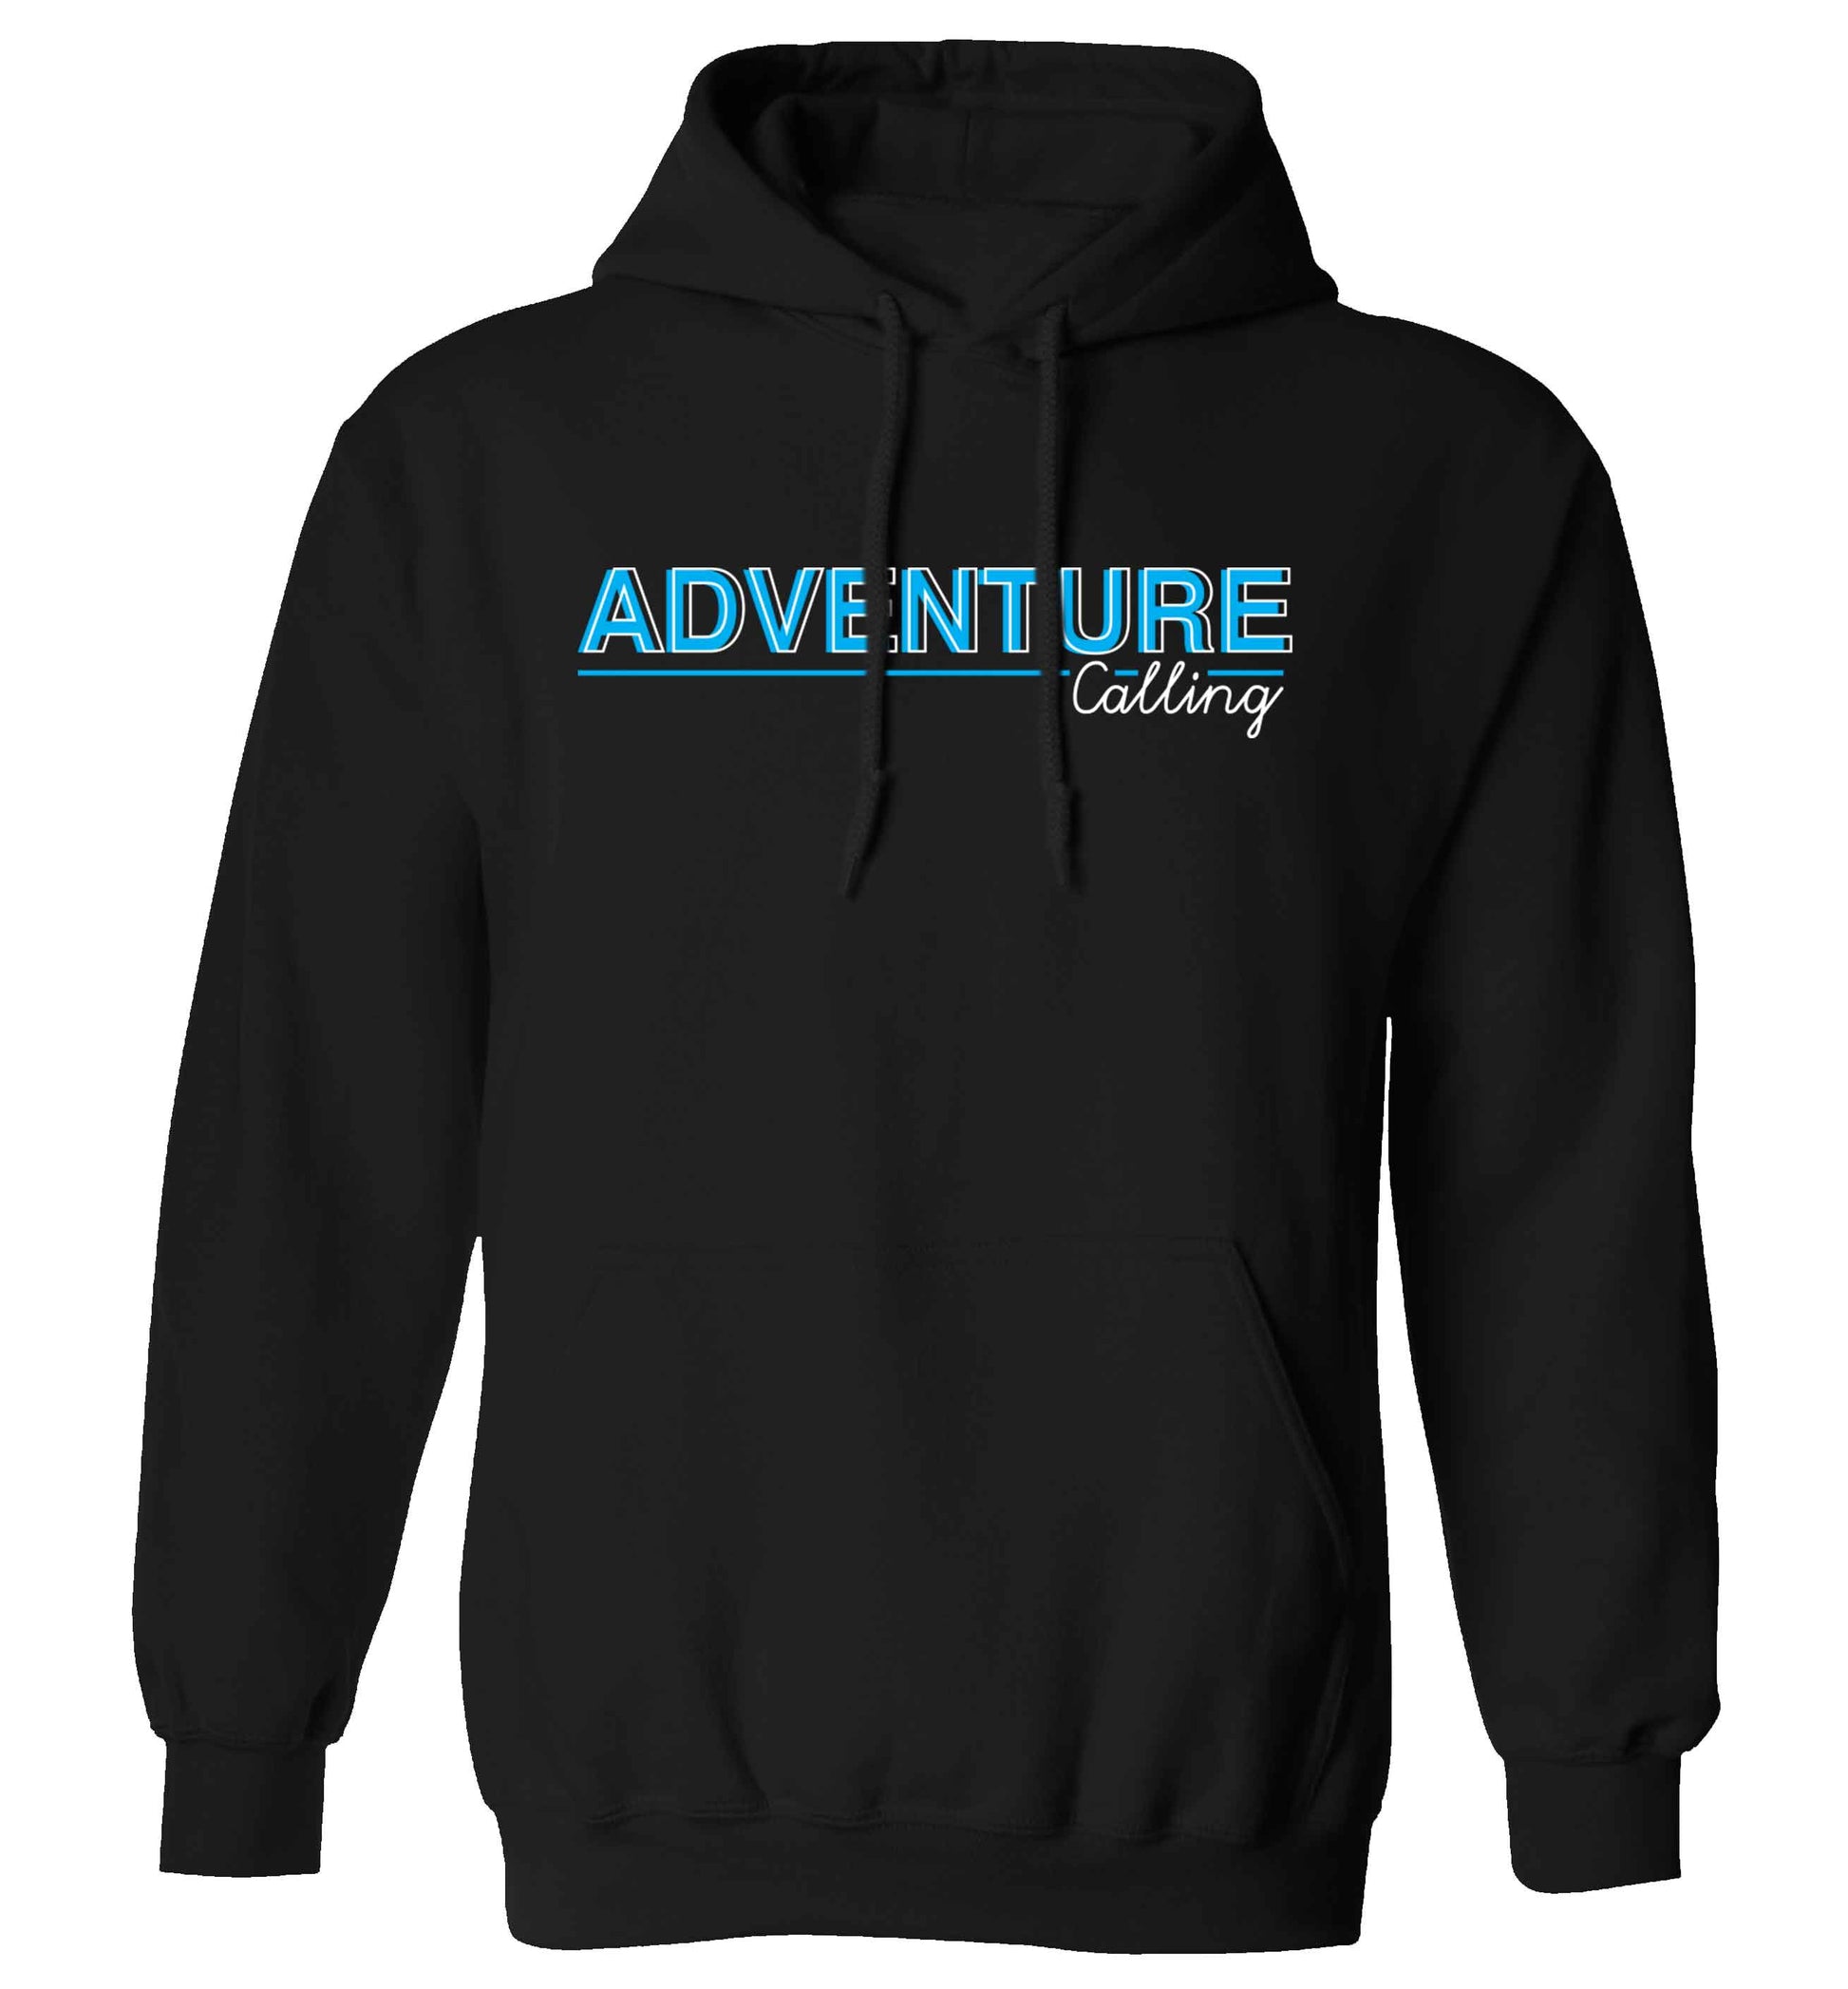 Adventure calling adults unisex black hoodie 2XL